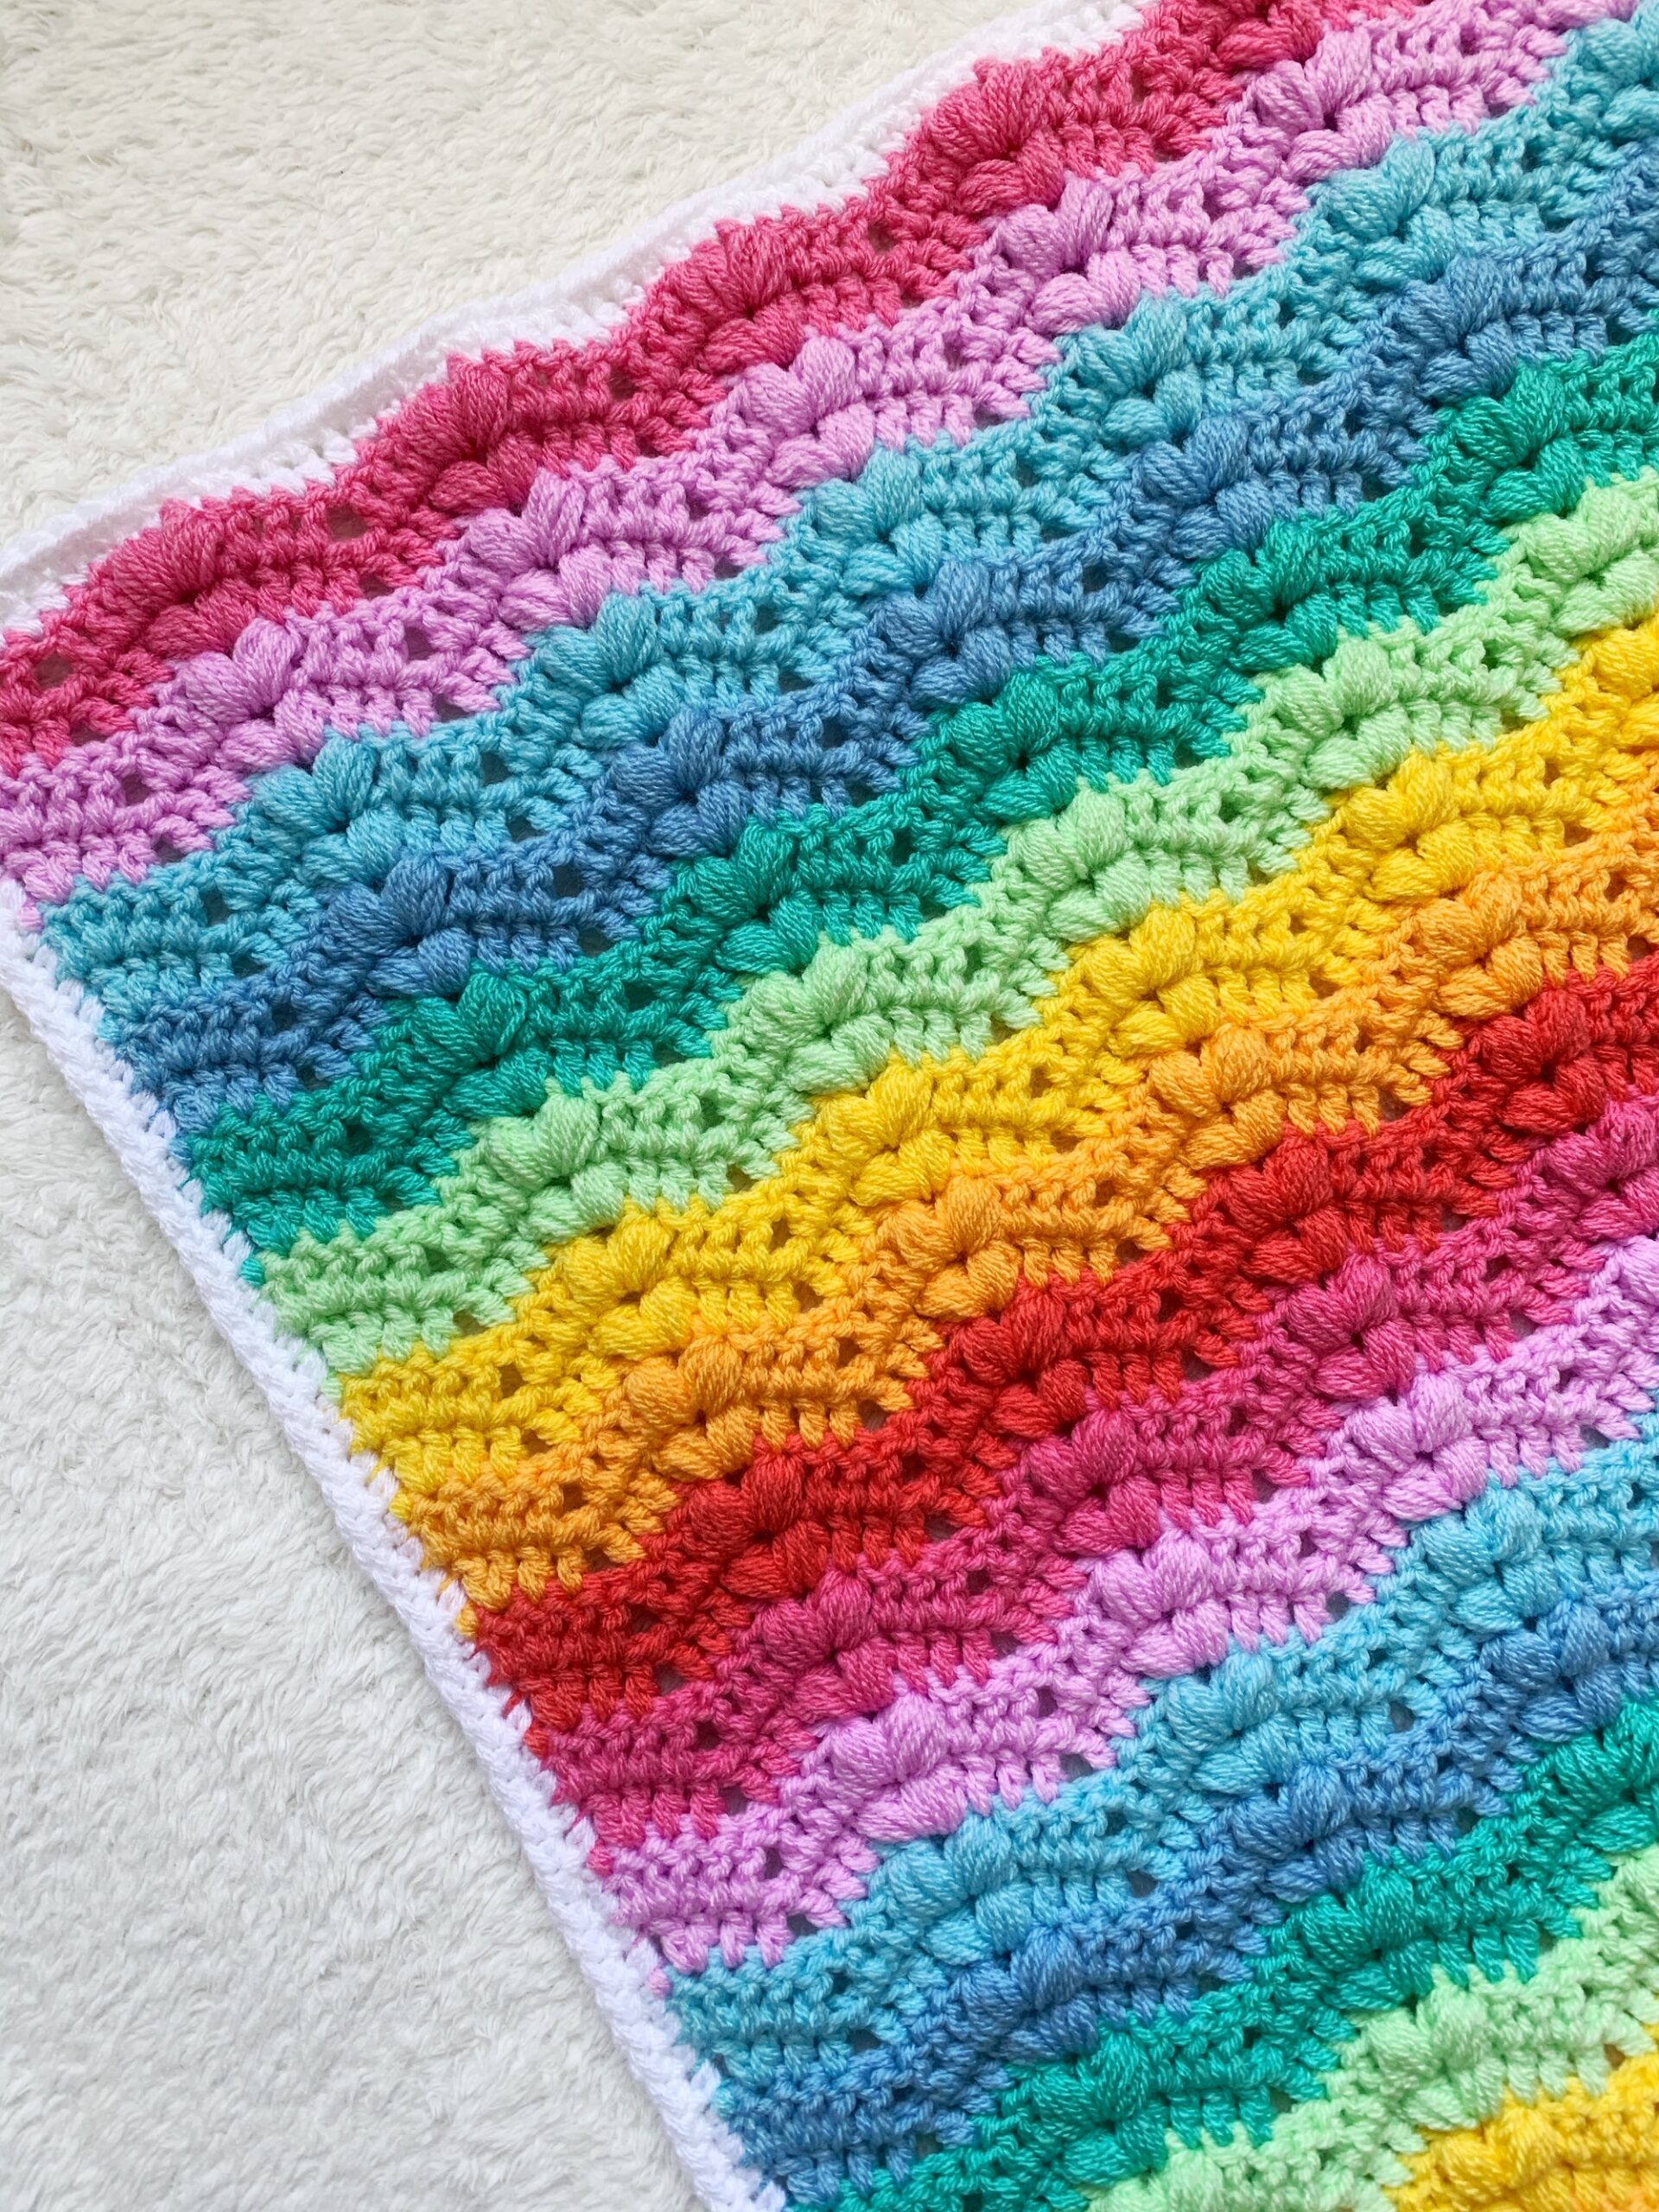 Bobble Ripple Baby Blanket - Free Crochet Pattern - Truly Crochet